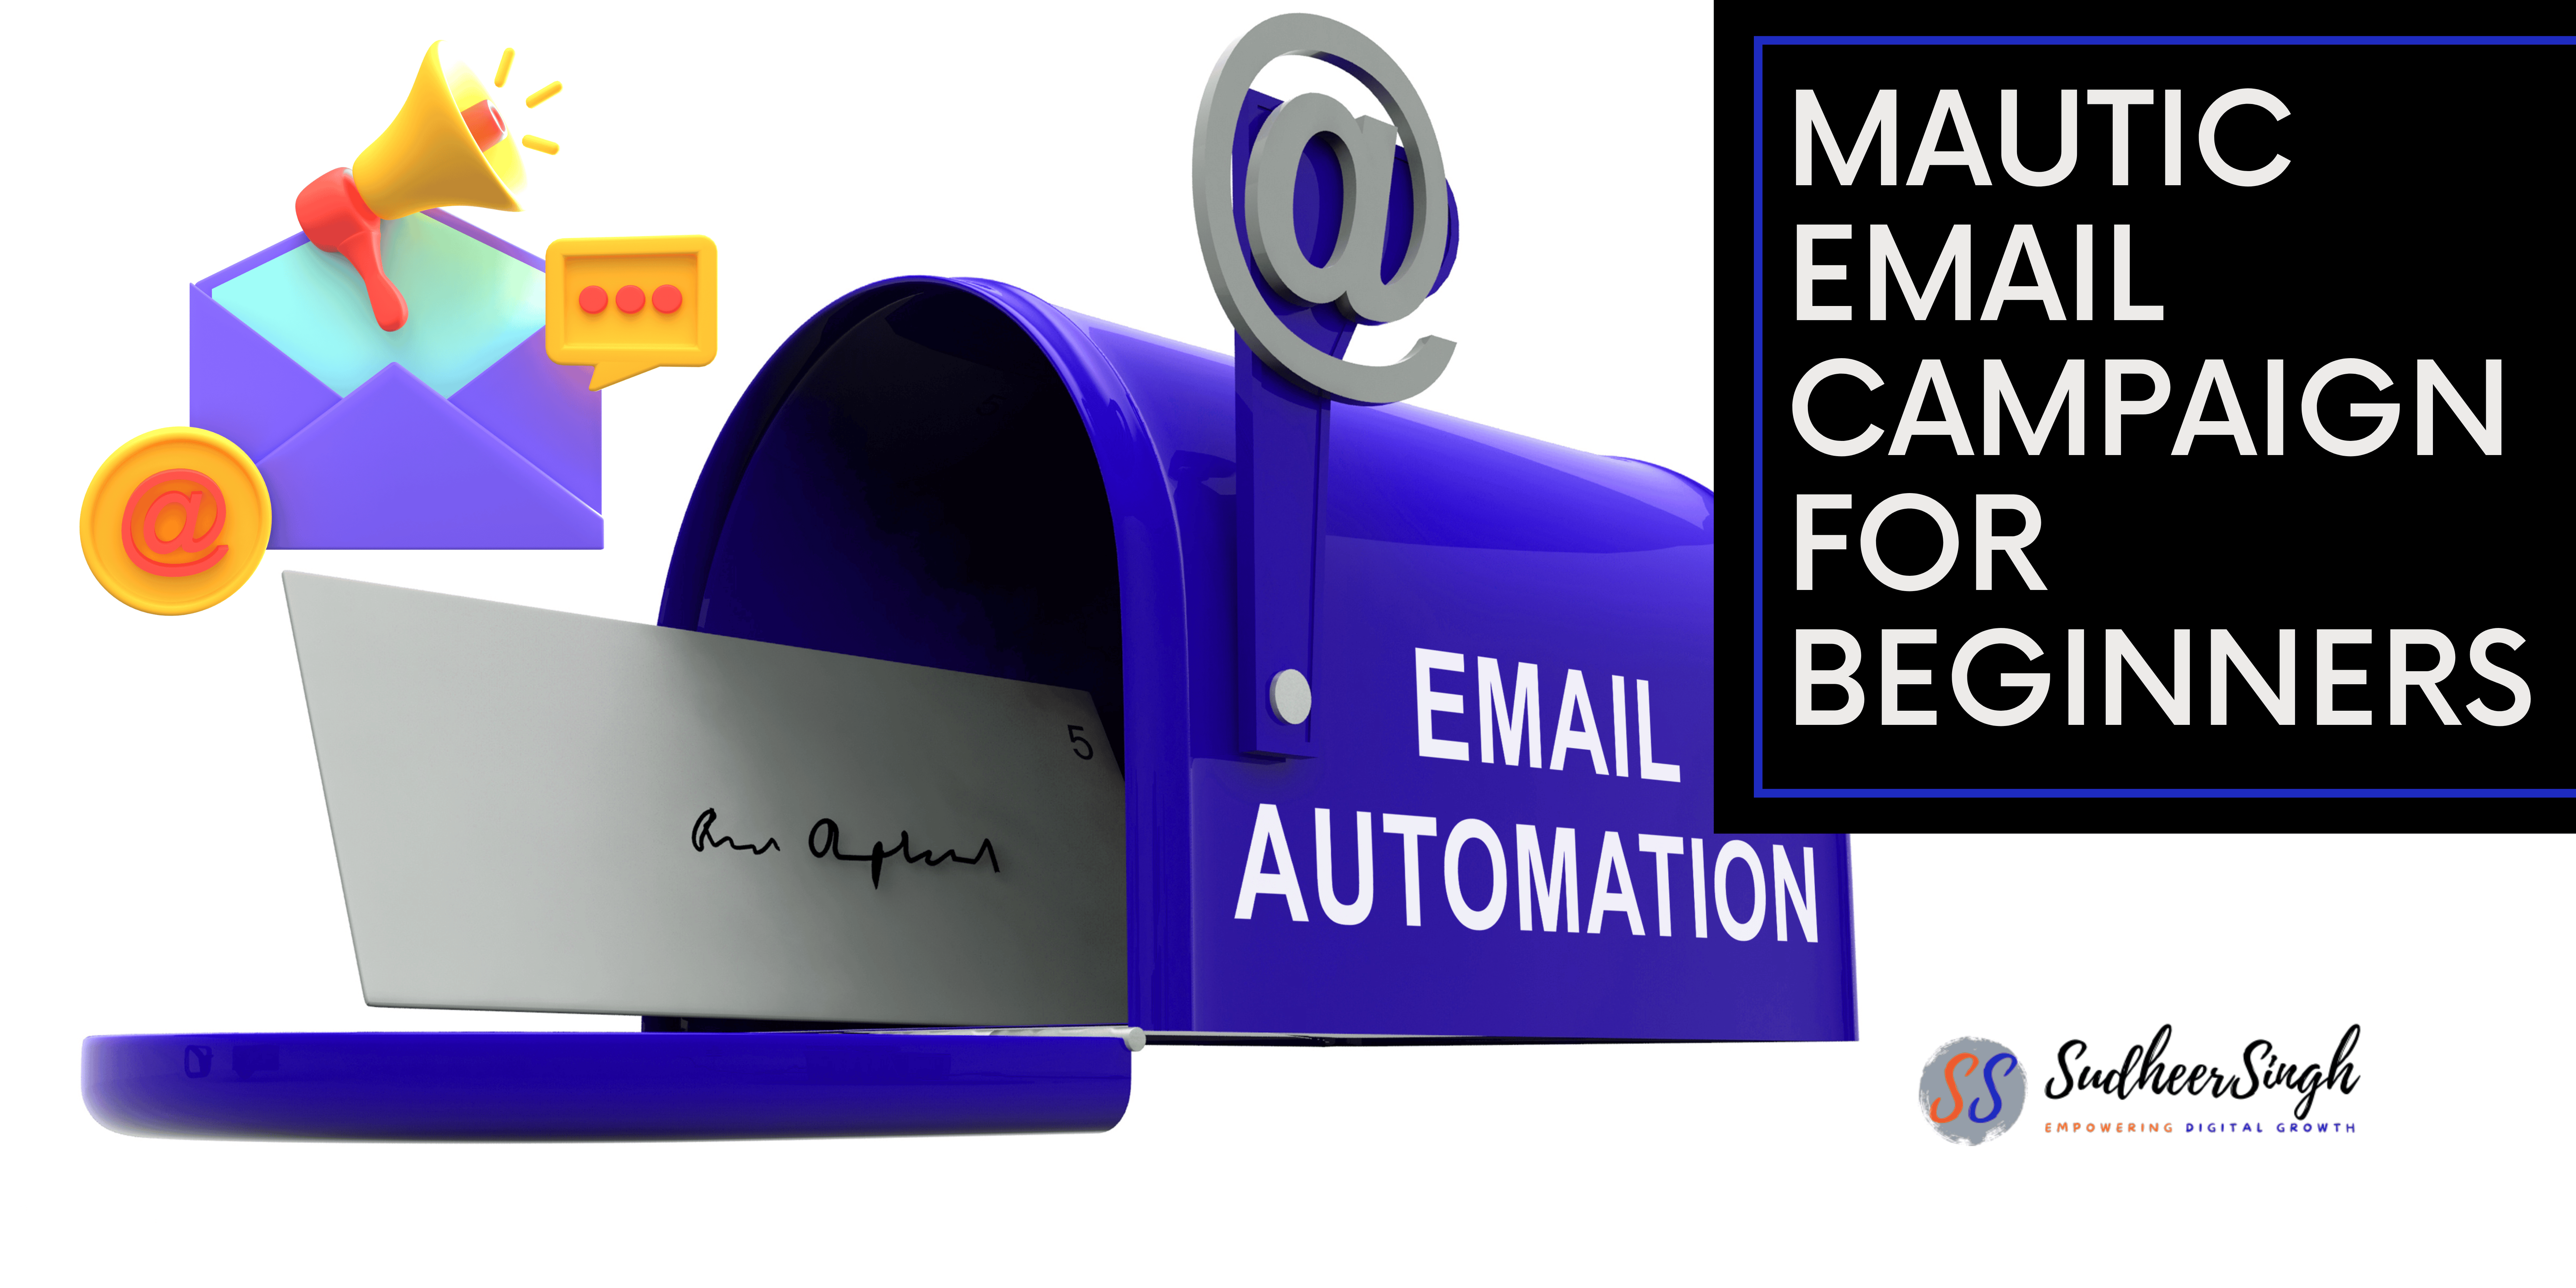 Mautic Email Campaign Setup